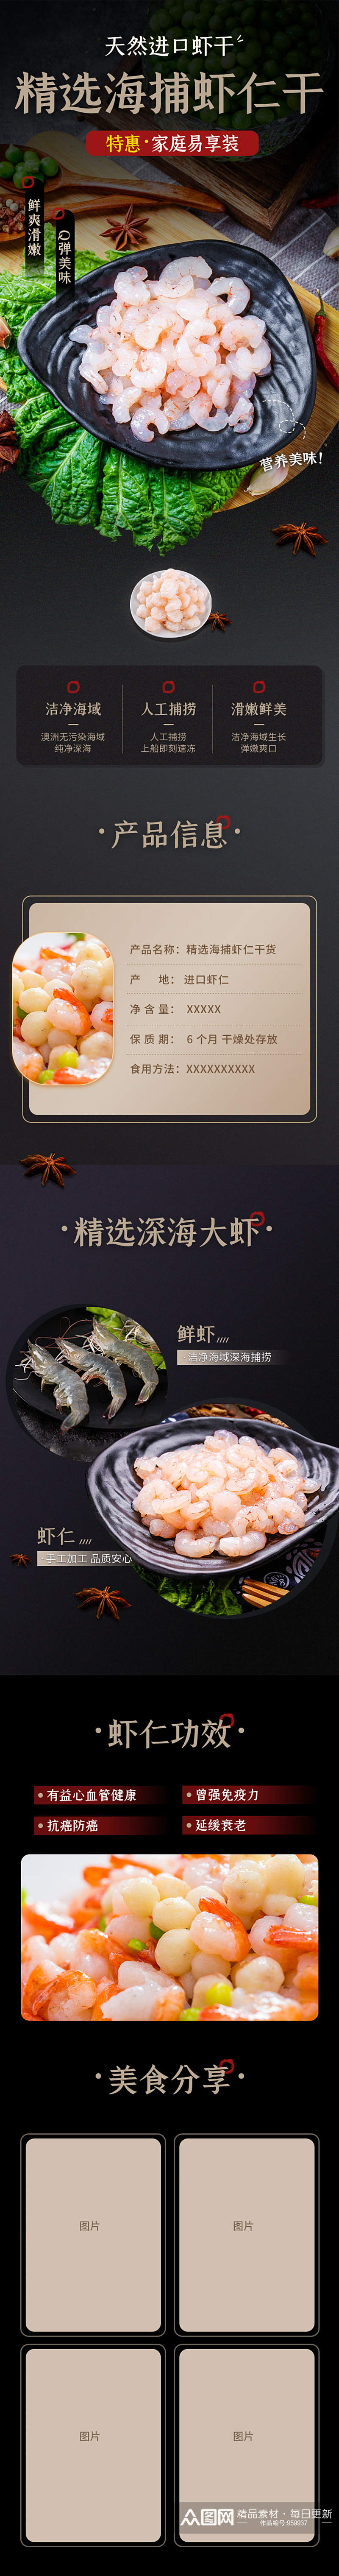 海捕虾仁干货海鲜进口食品虾米详情页素材